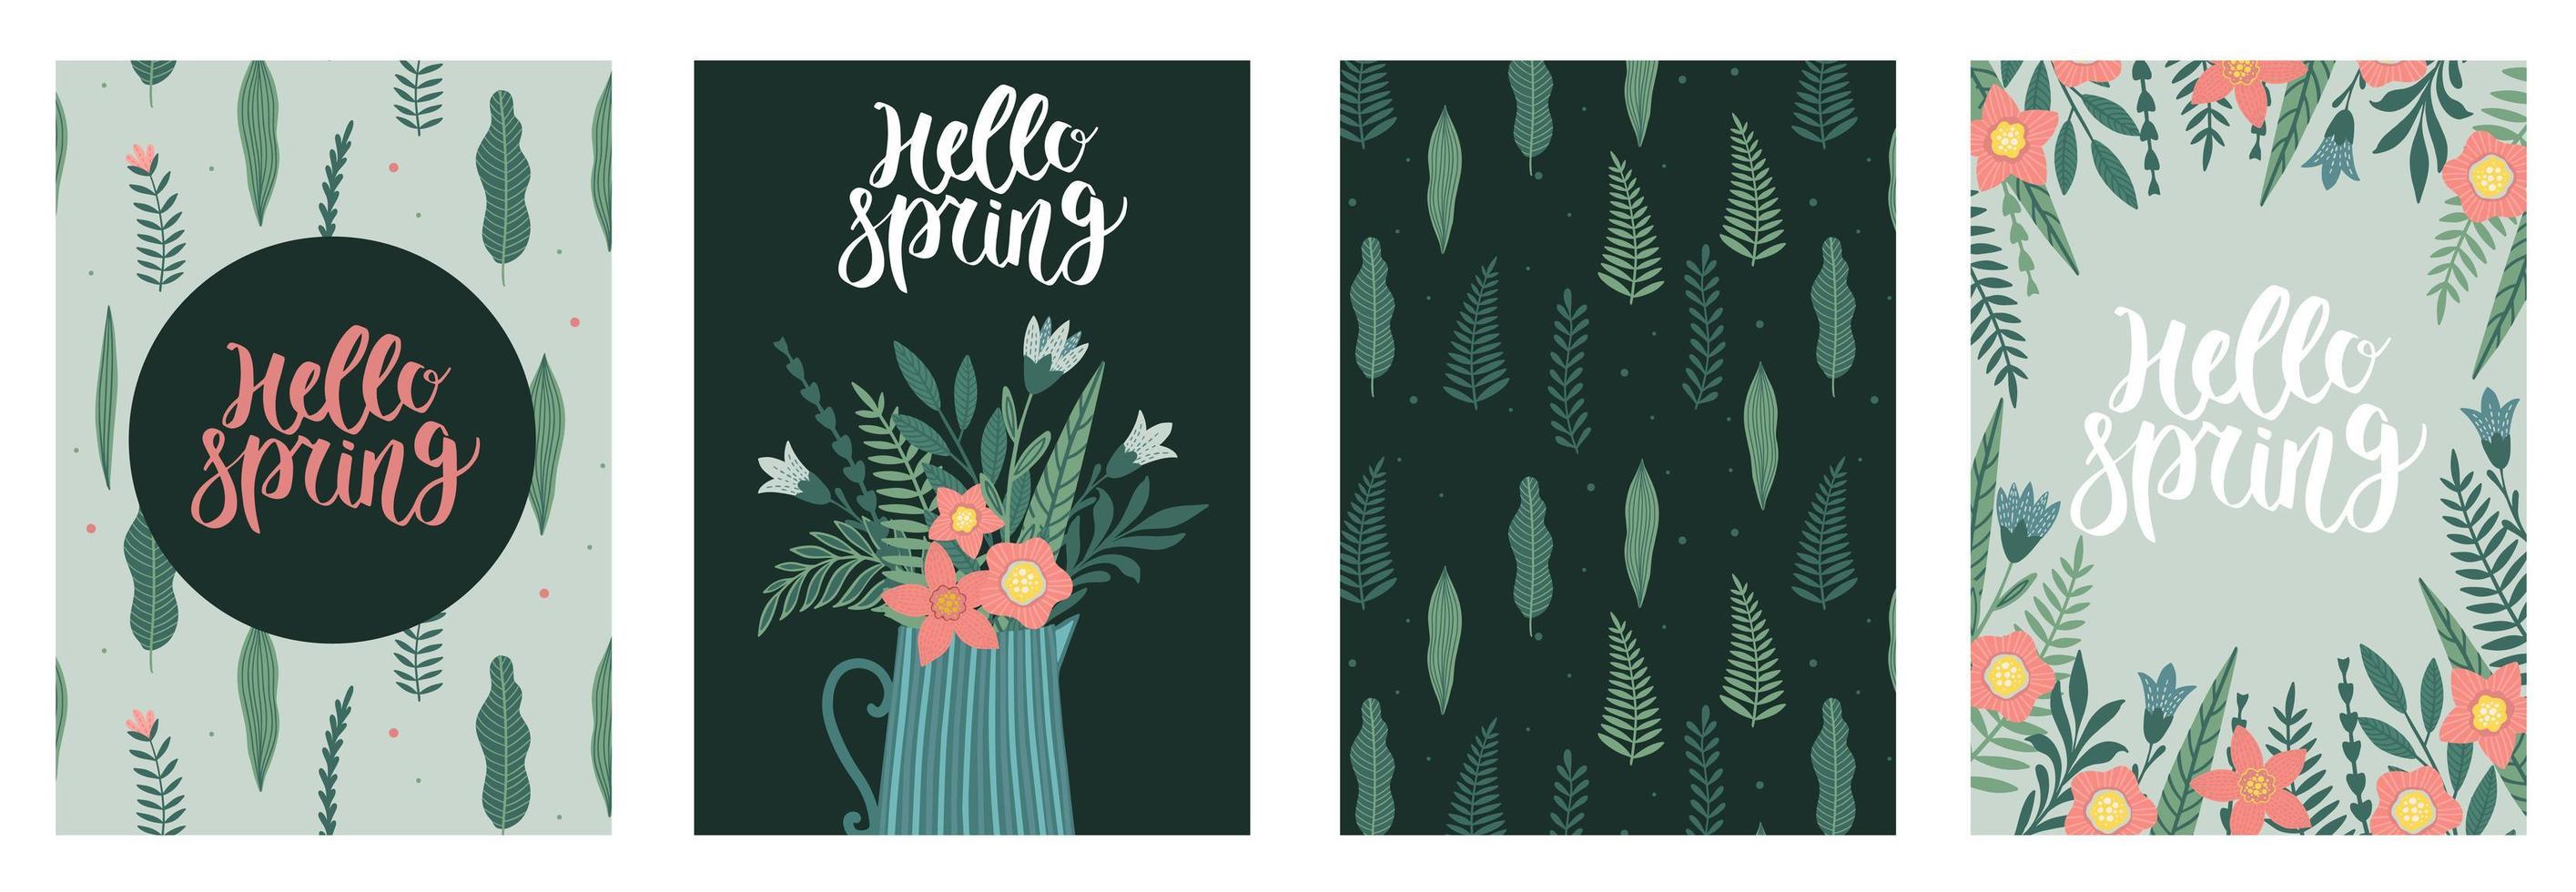 feliz día de la mujer 8 de marzo lindas tarjetas para las vacaciones de primavera. ilustración vectorial de una fecha, una mujer y un ramo de flores. vector